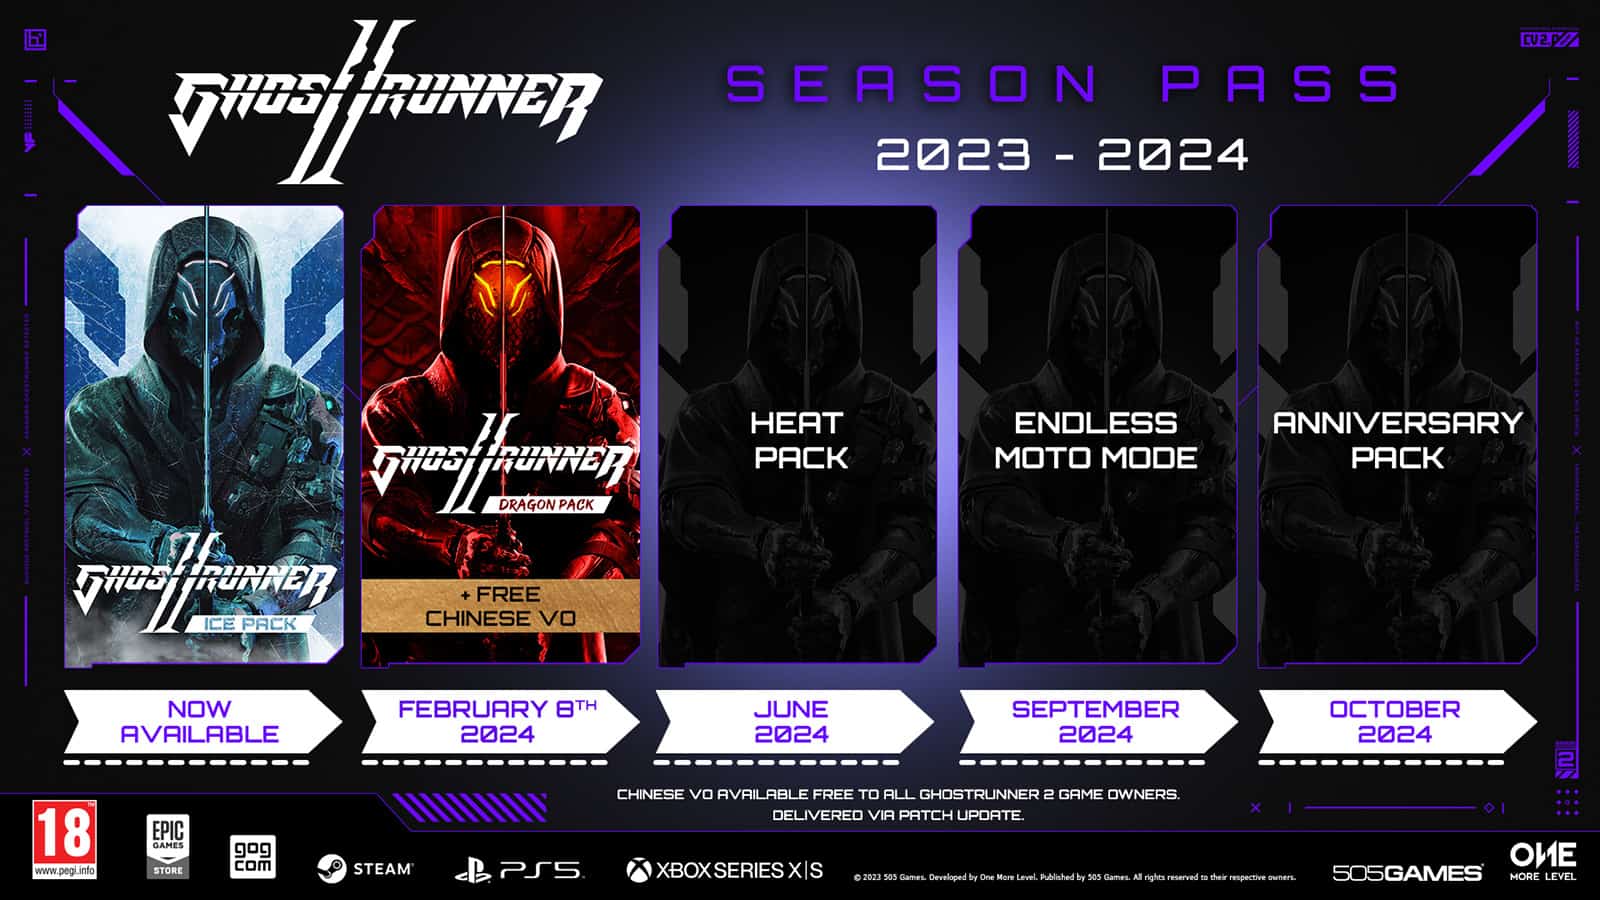 Ghostrunner Season Pass Timeline